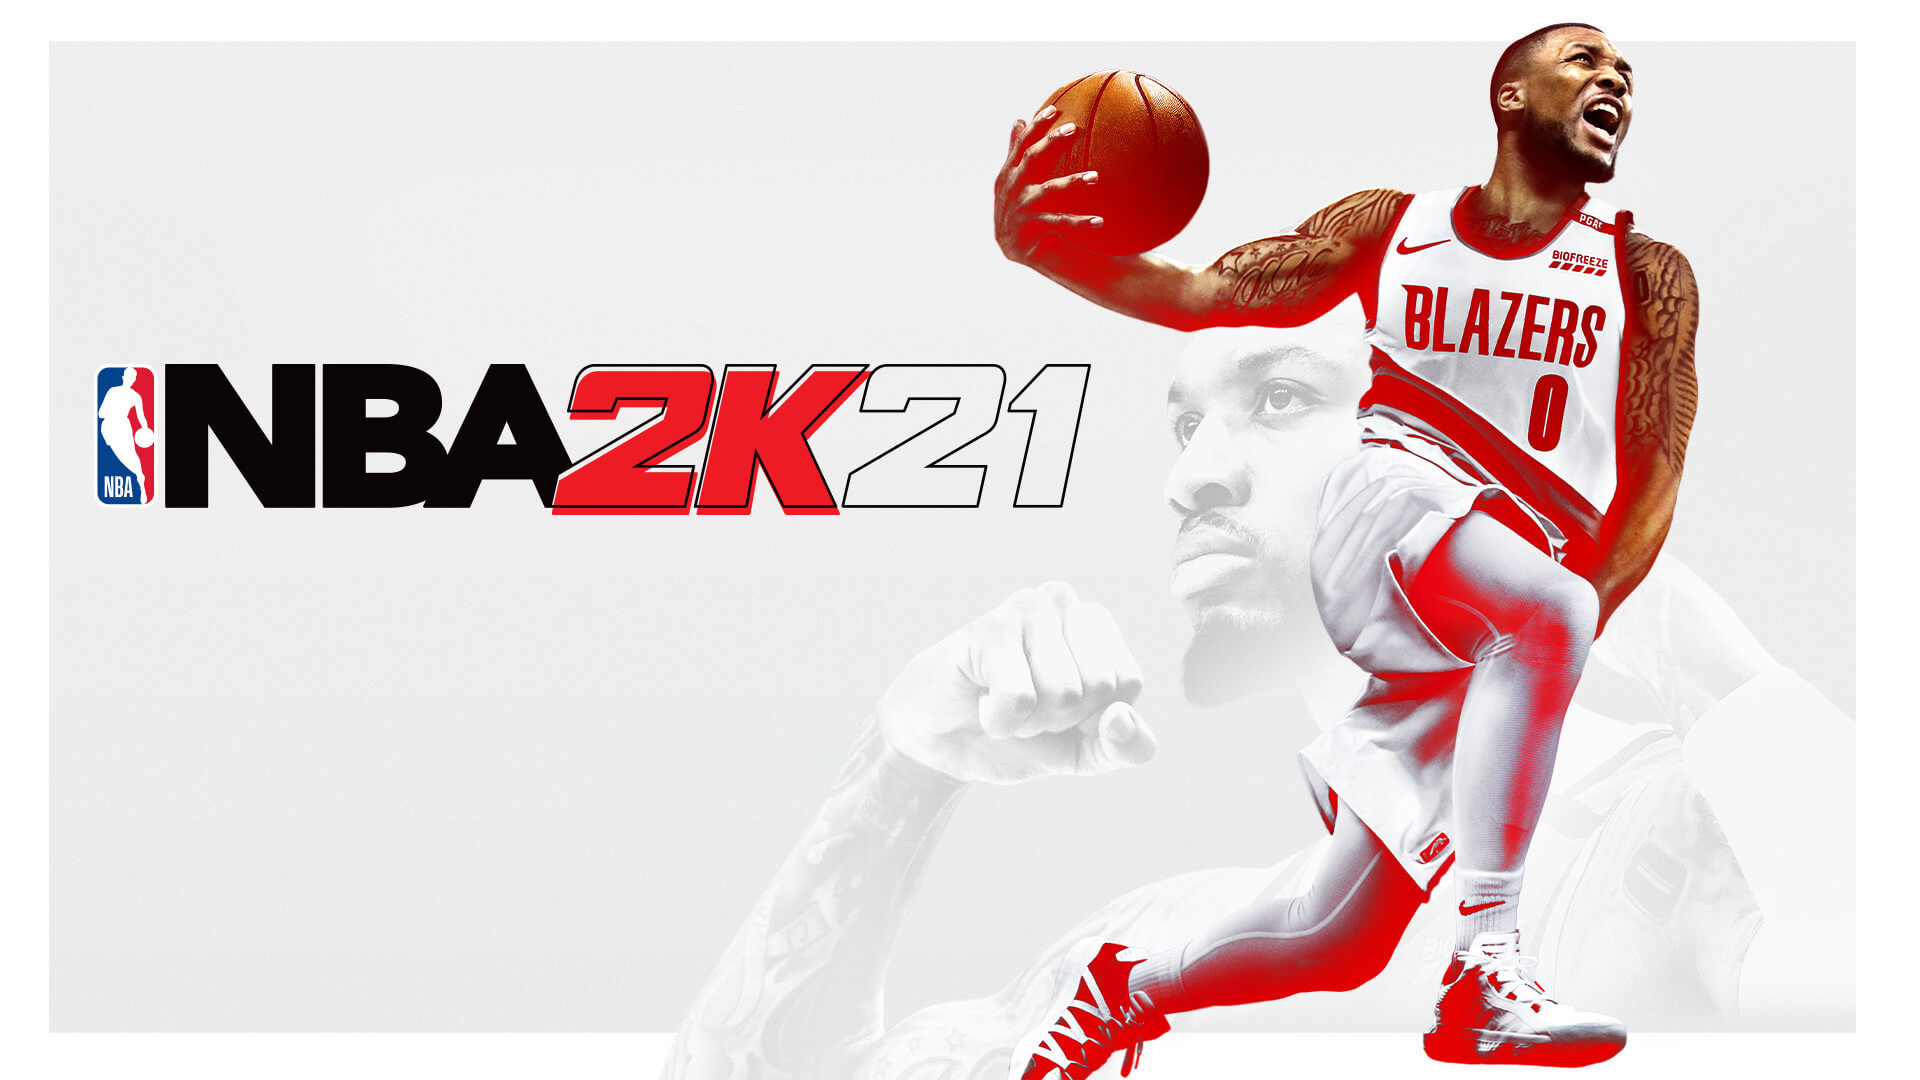 Itt az NBA 2K21 demója